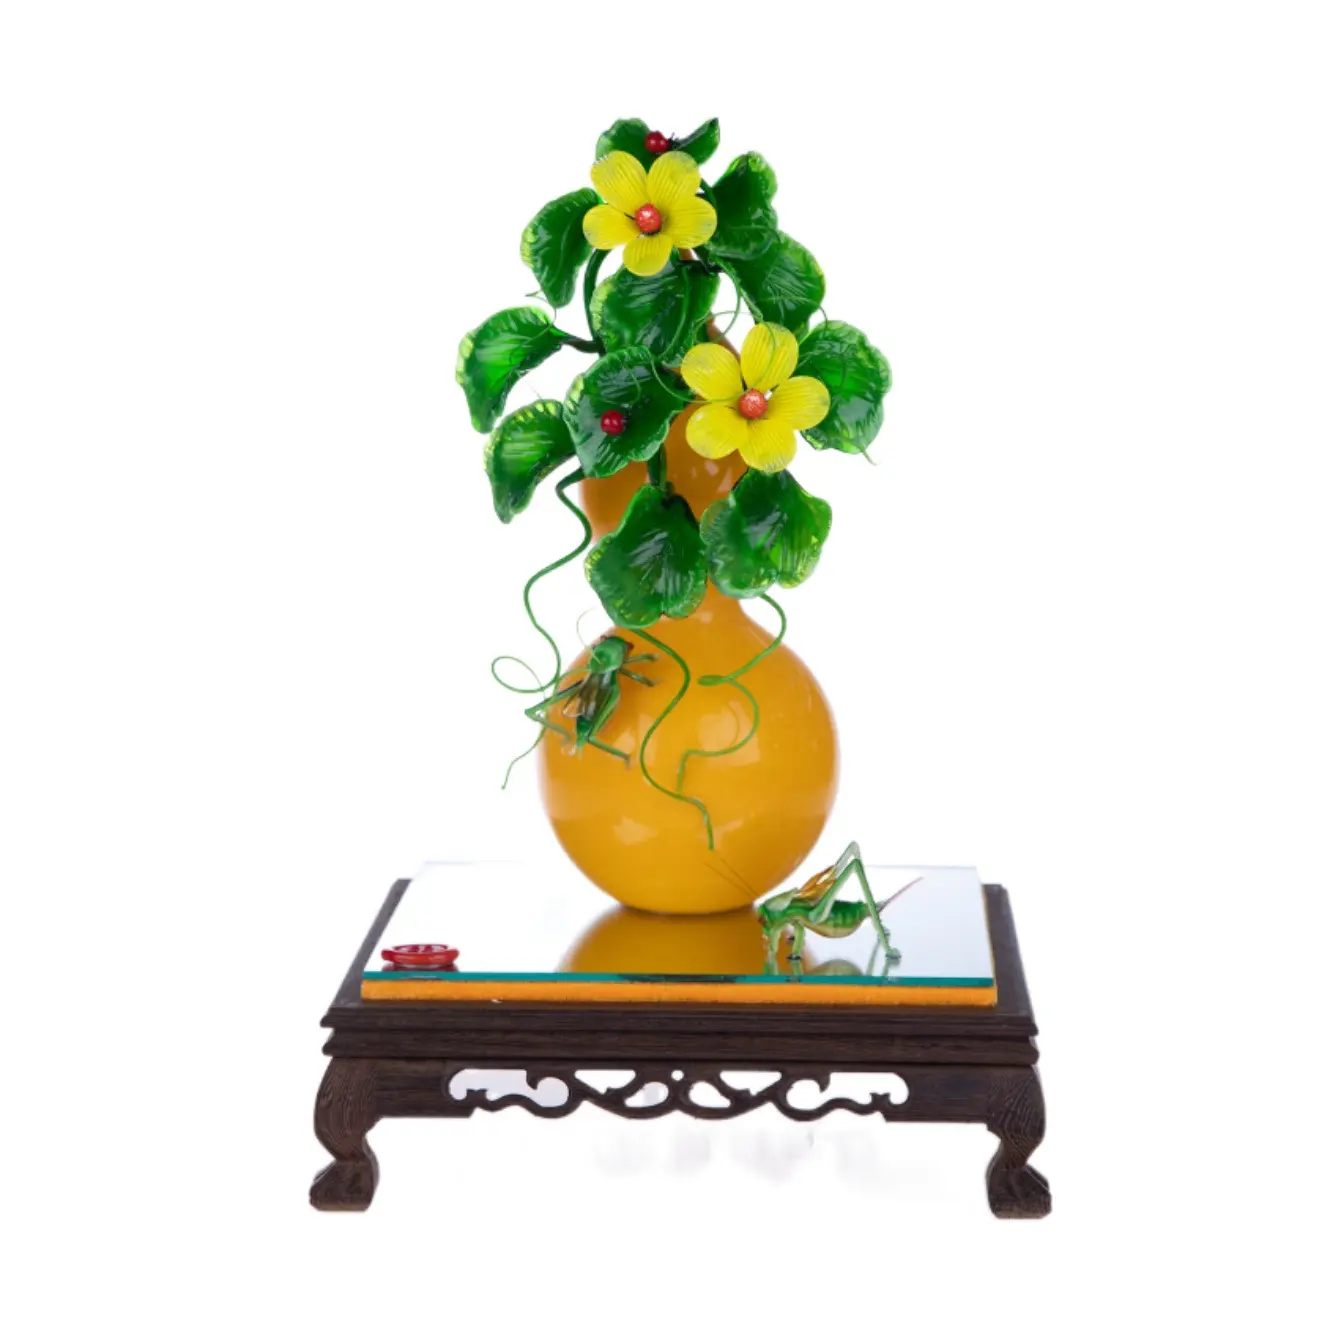 Il maestro ha personalizzato il miglior fiore giallo foglia verde zucca gialla opere d'arte culturali di fascia alta cristallo naturale